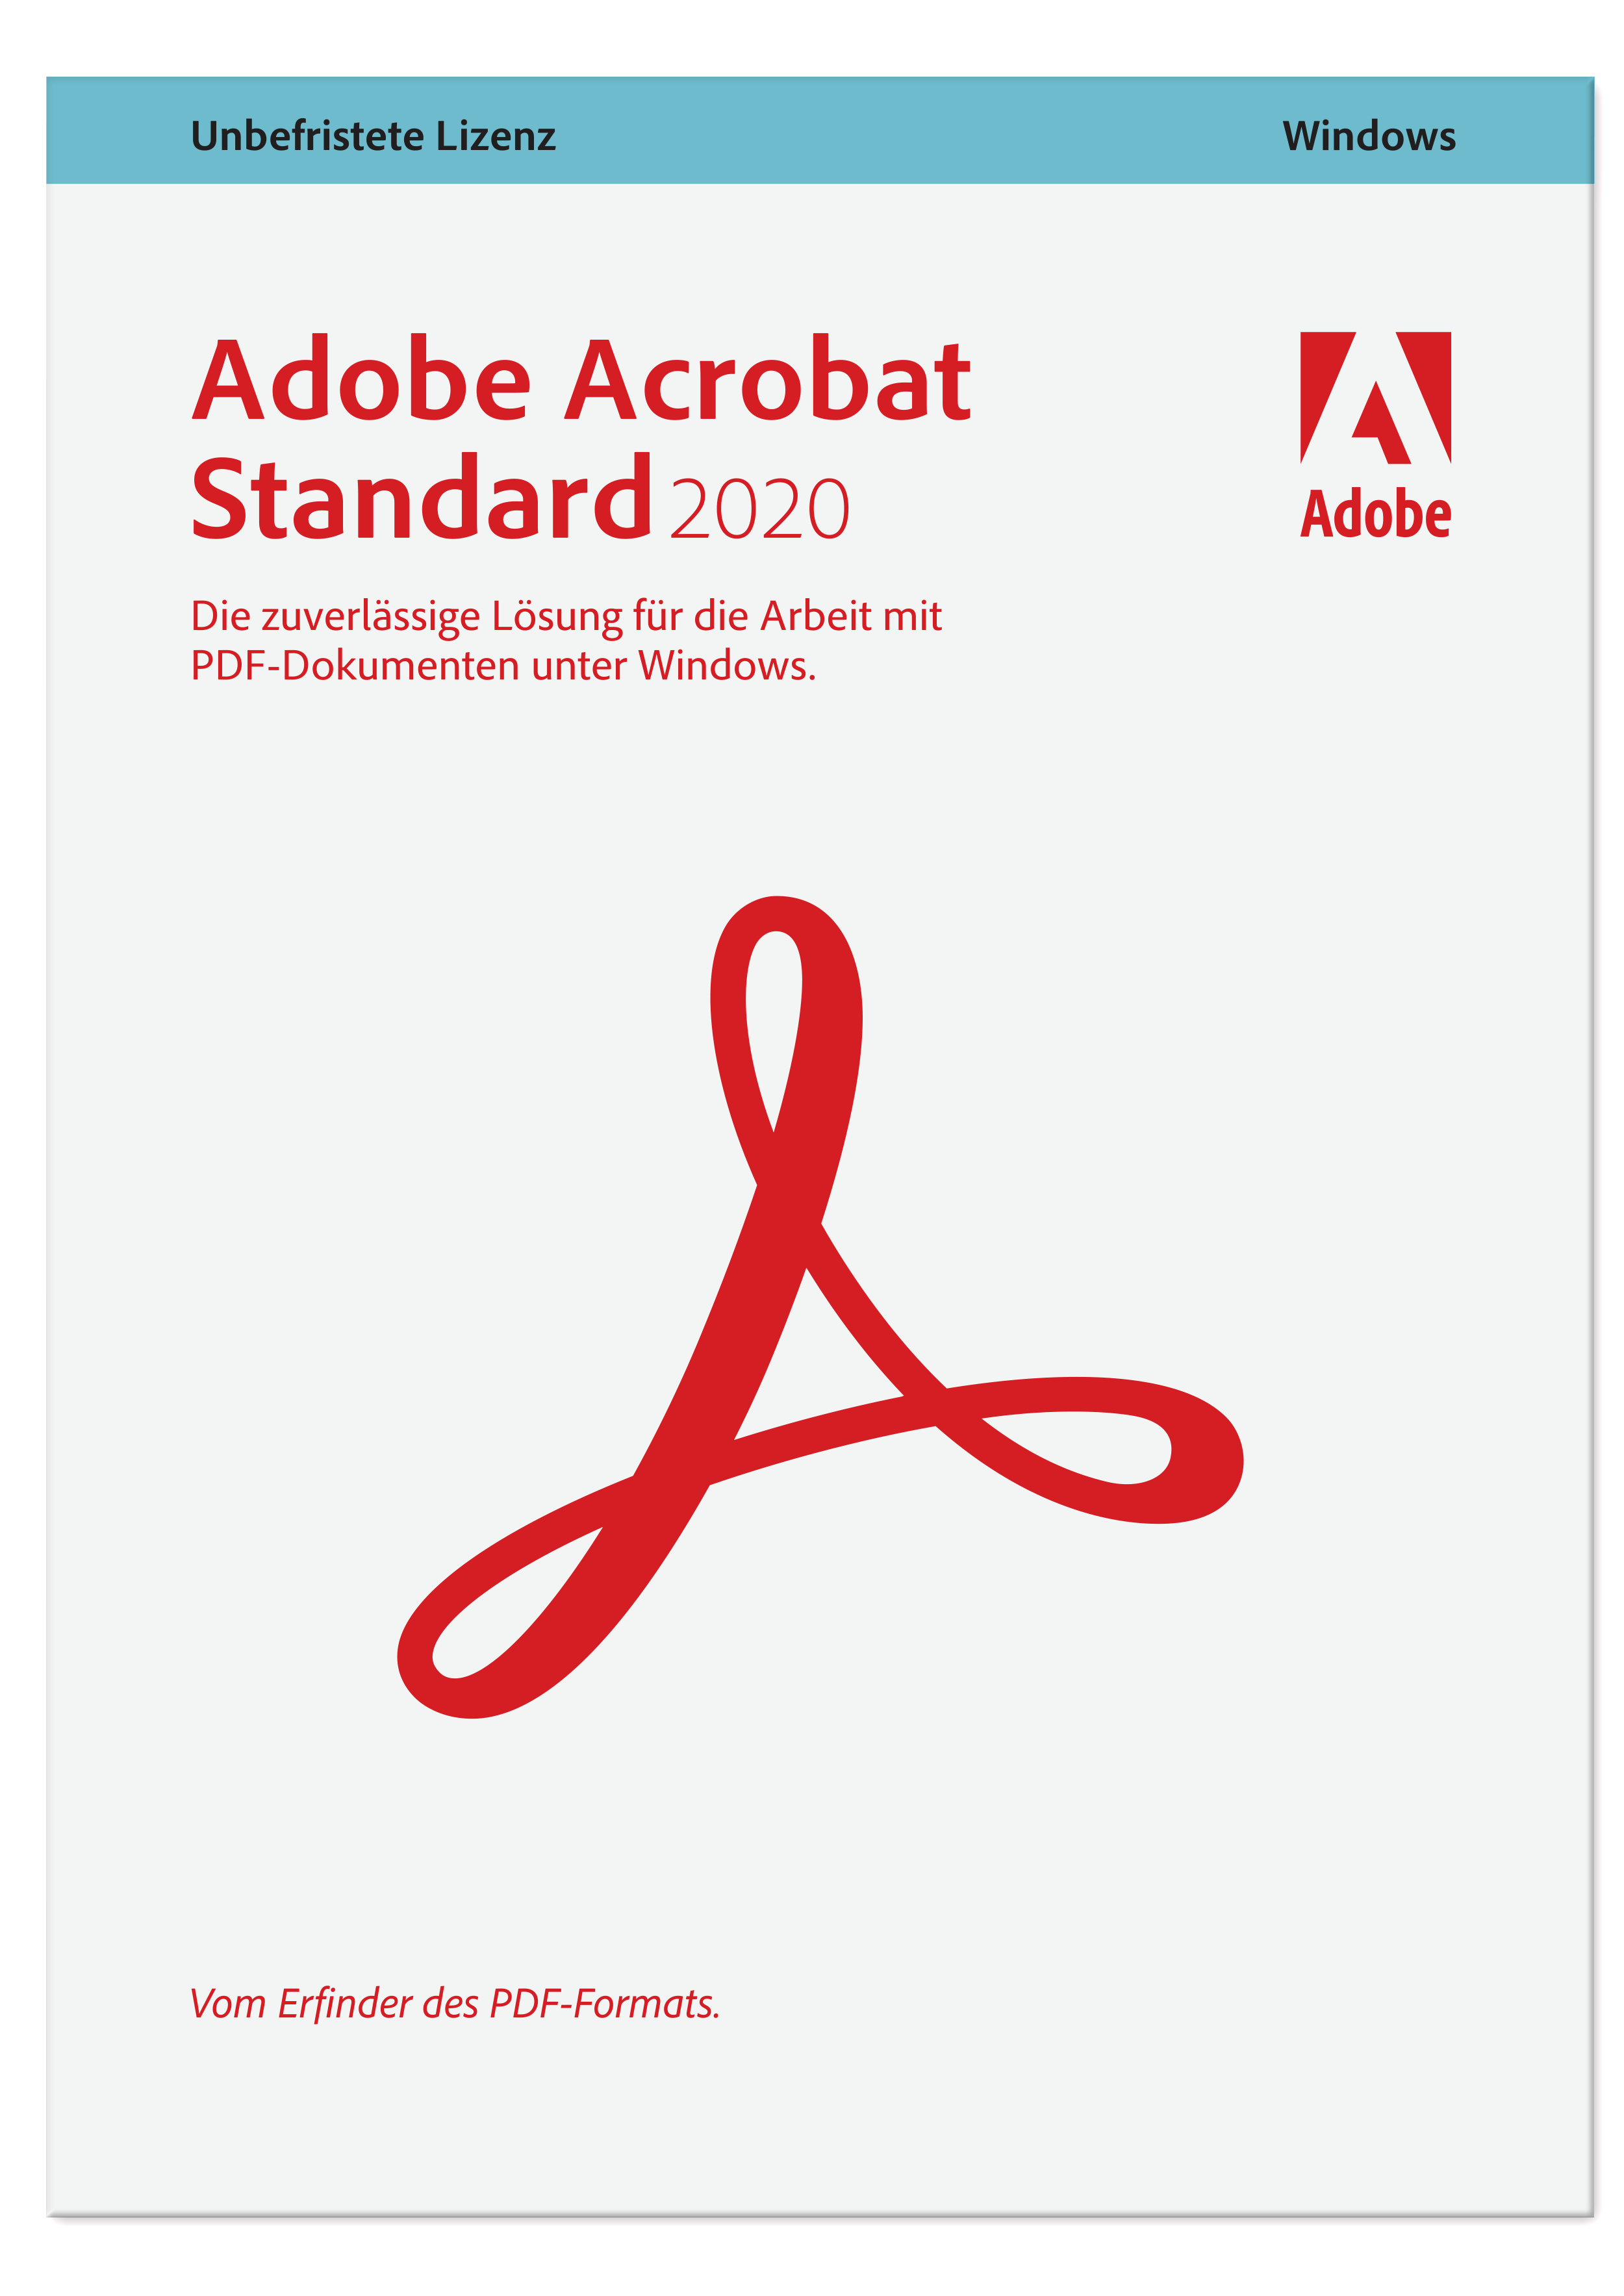 Adobe Acrobat Standard - - 1 [PC/MAC] Jahr Download - 2020